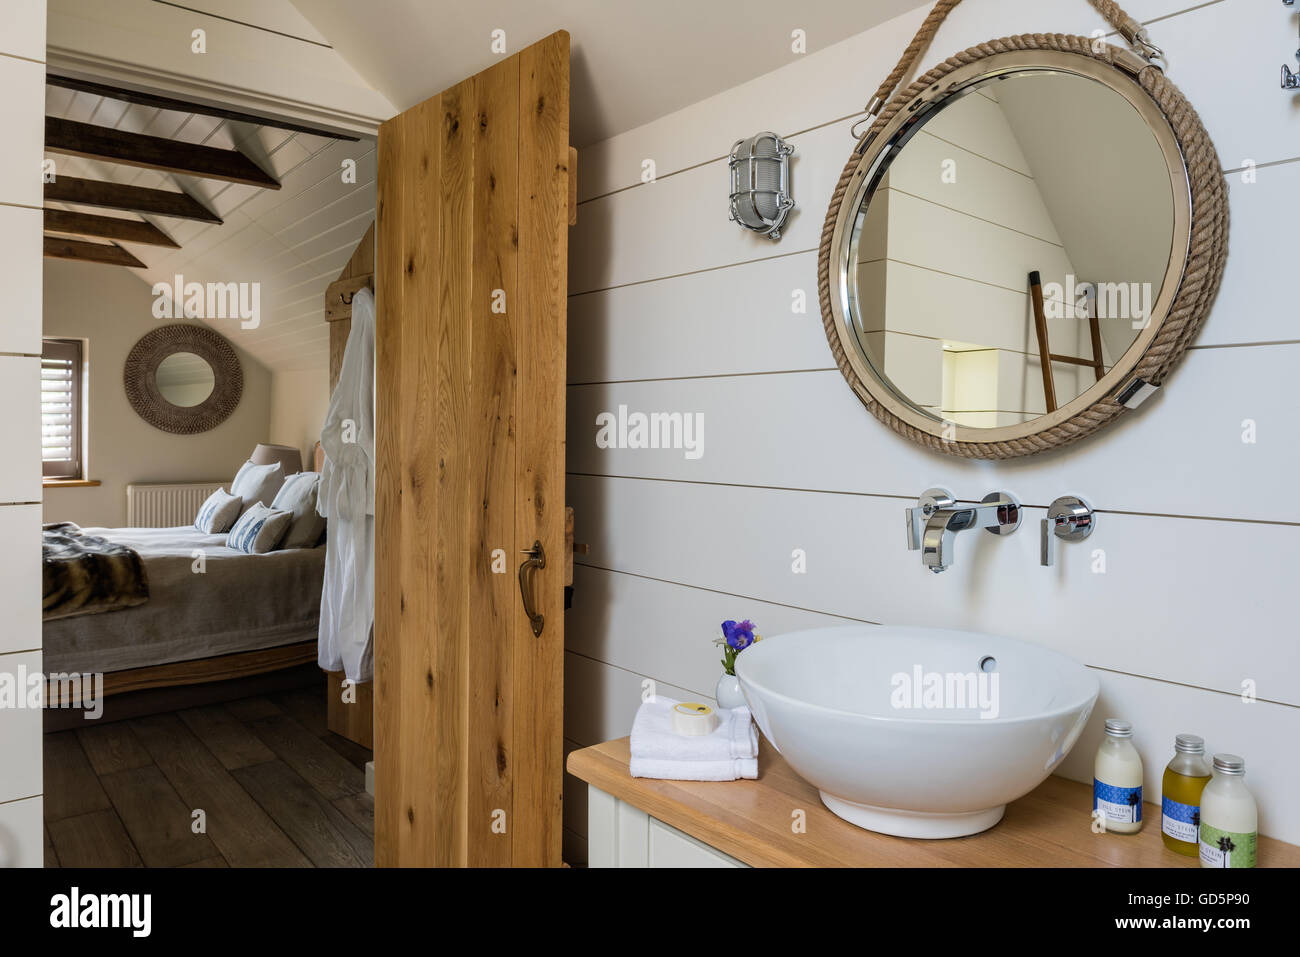 Tablones de madera pintada de blanco y estilo náutico espejo en el cuarto de baño Foto de stock